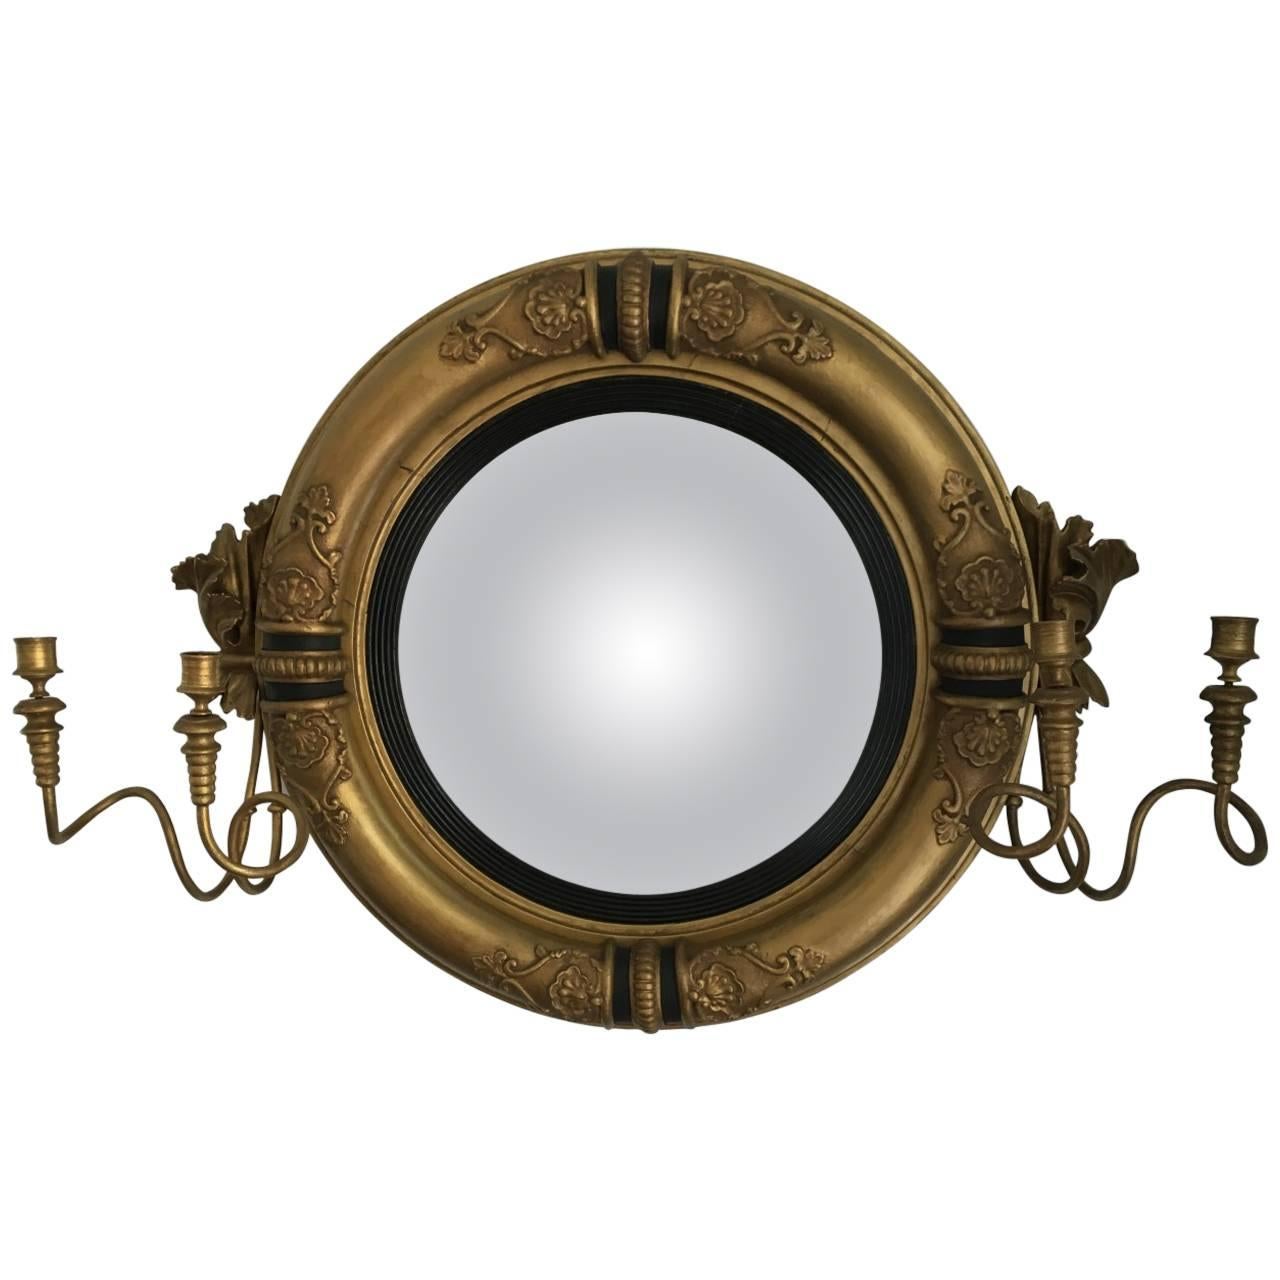 Regency Period Convex Girandole Mirror